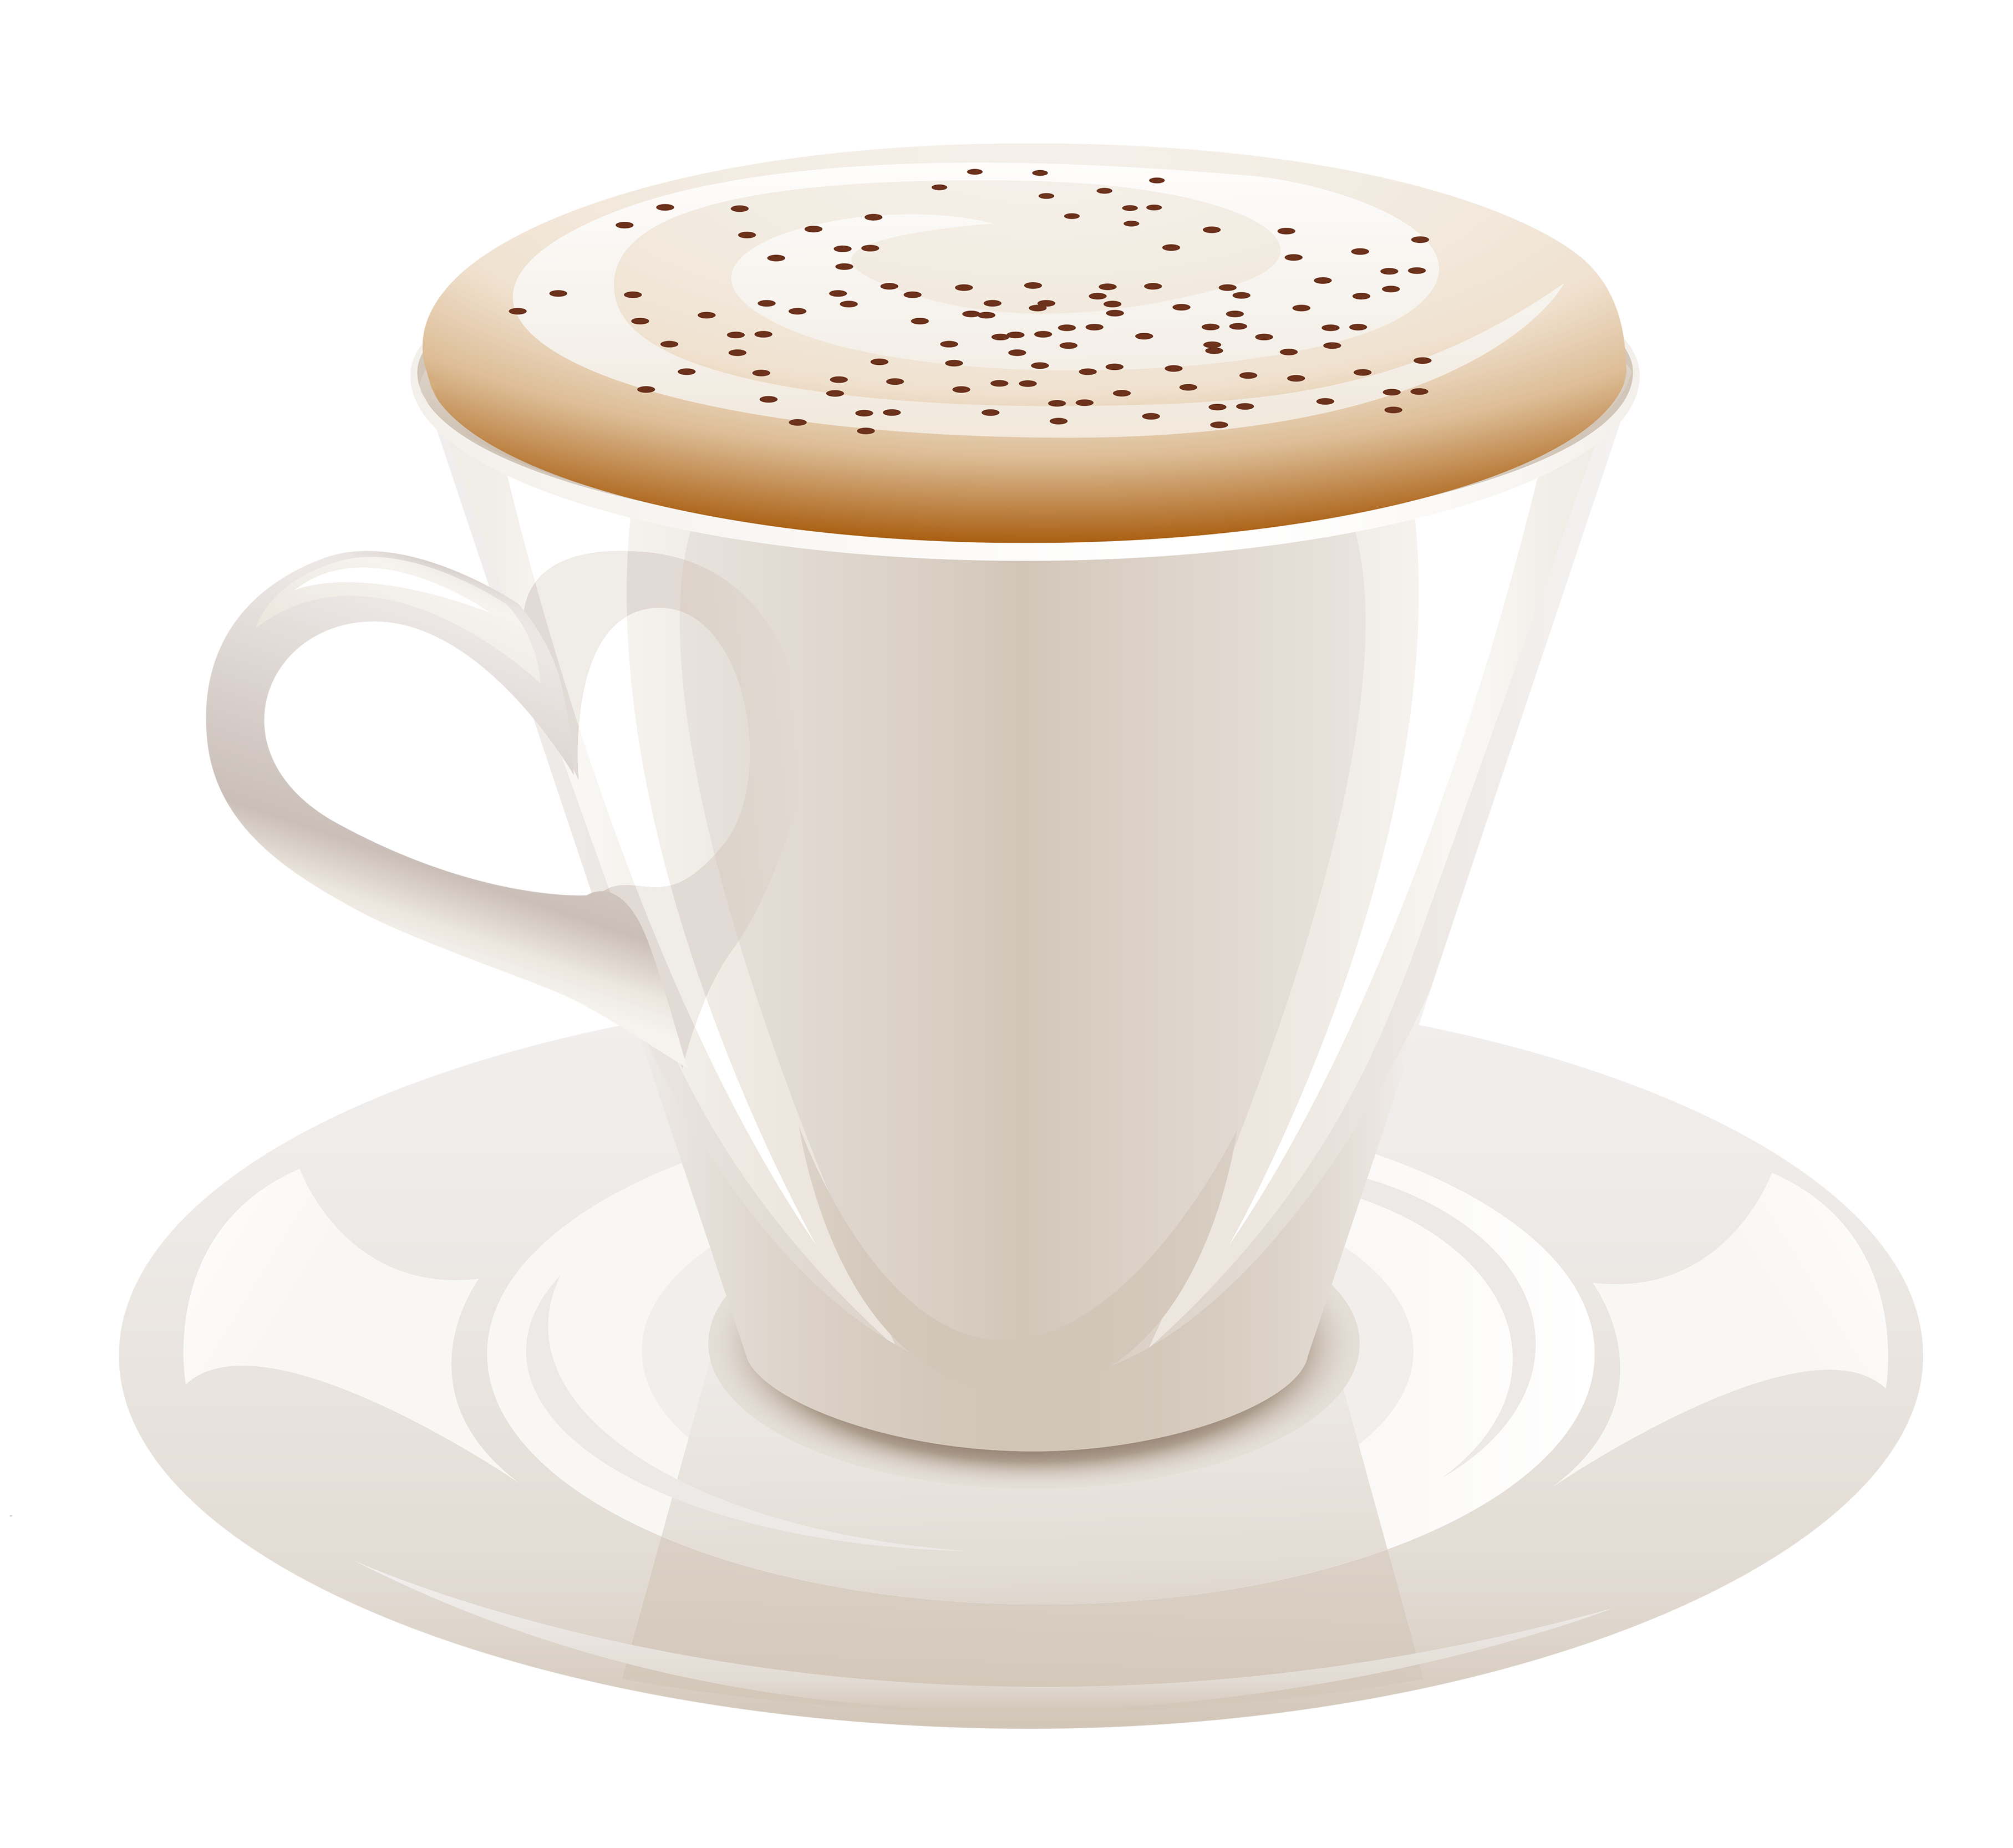 Single-Origin Cup Tea Espresso Coffee Cafe PNG Image